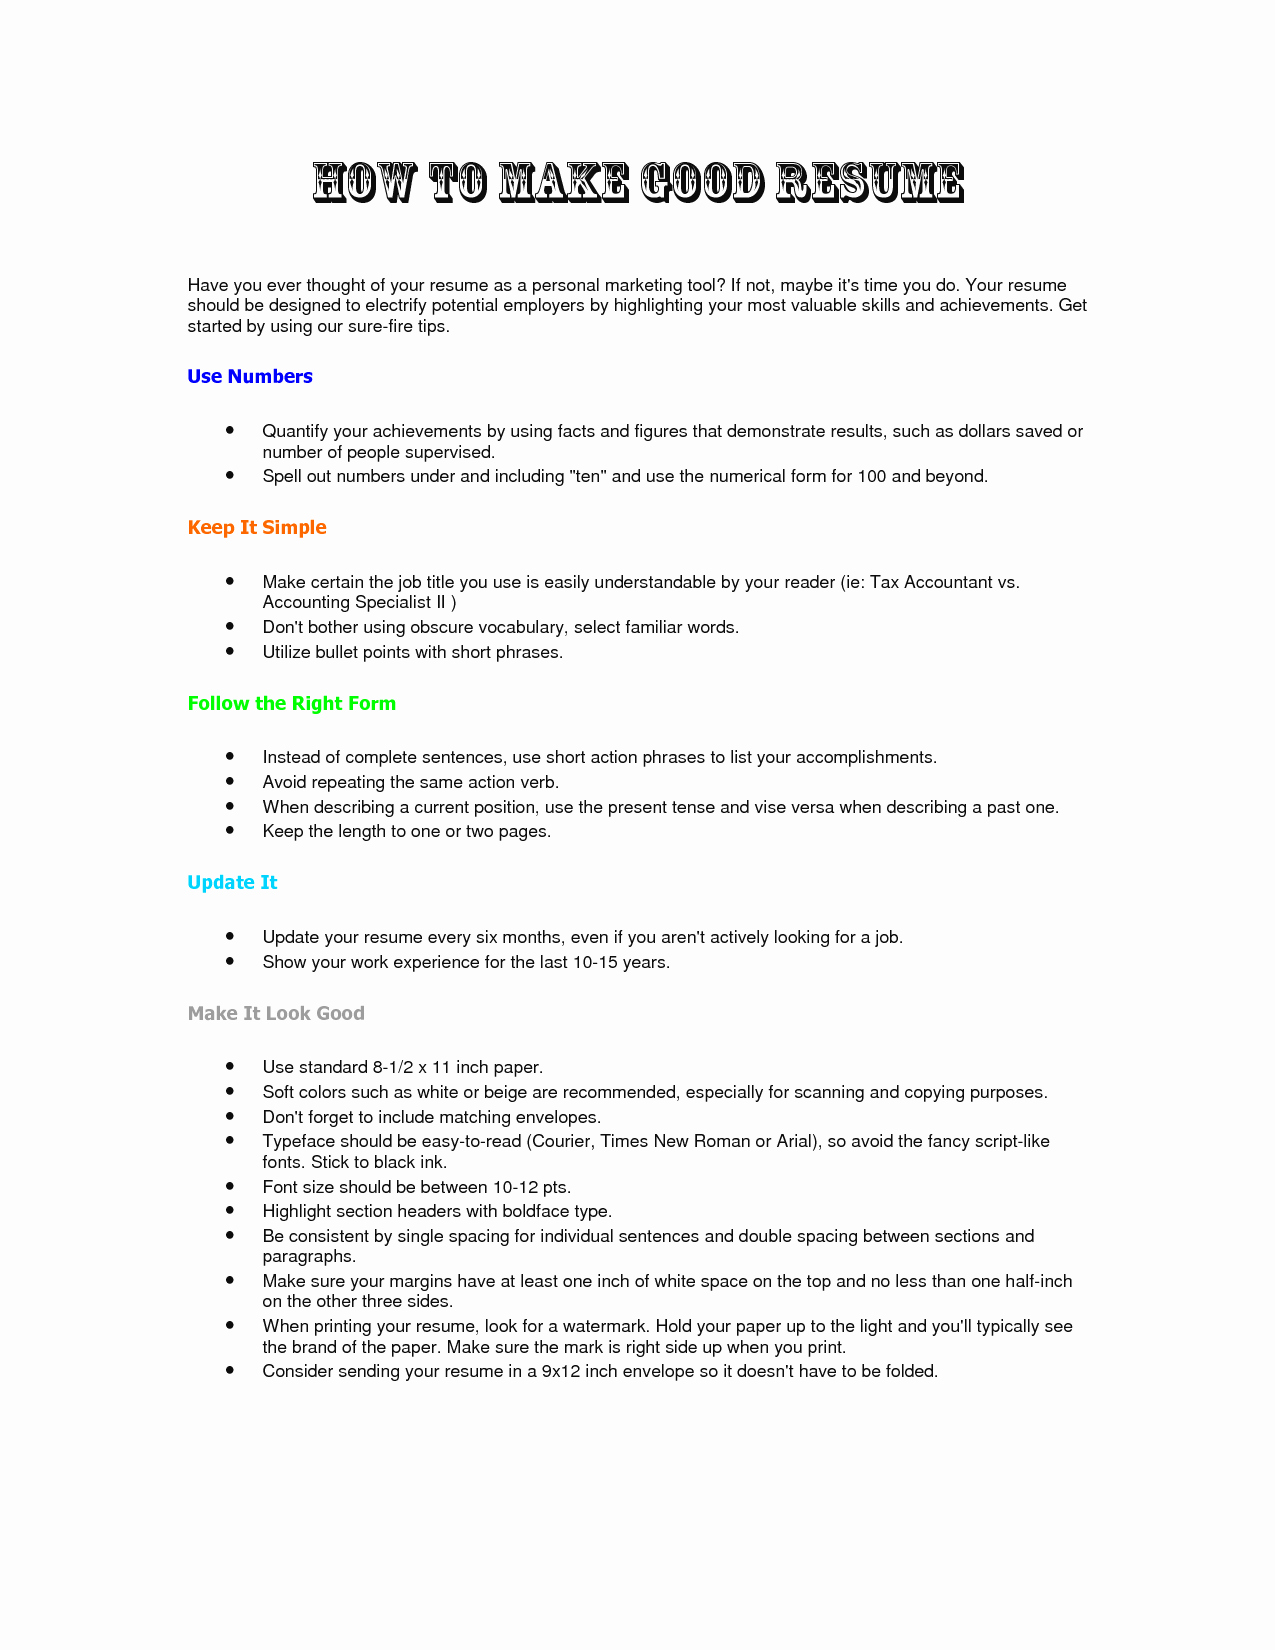 How to Make A Resume Resume Cv